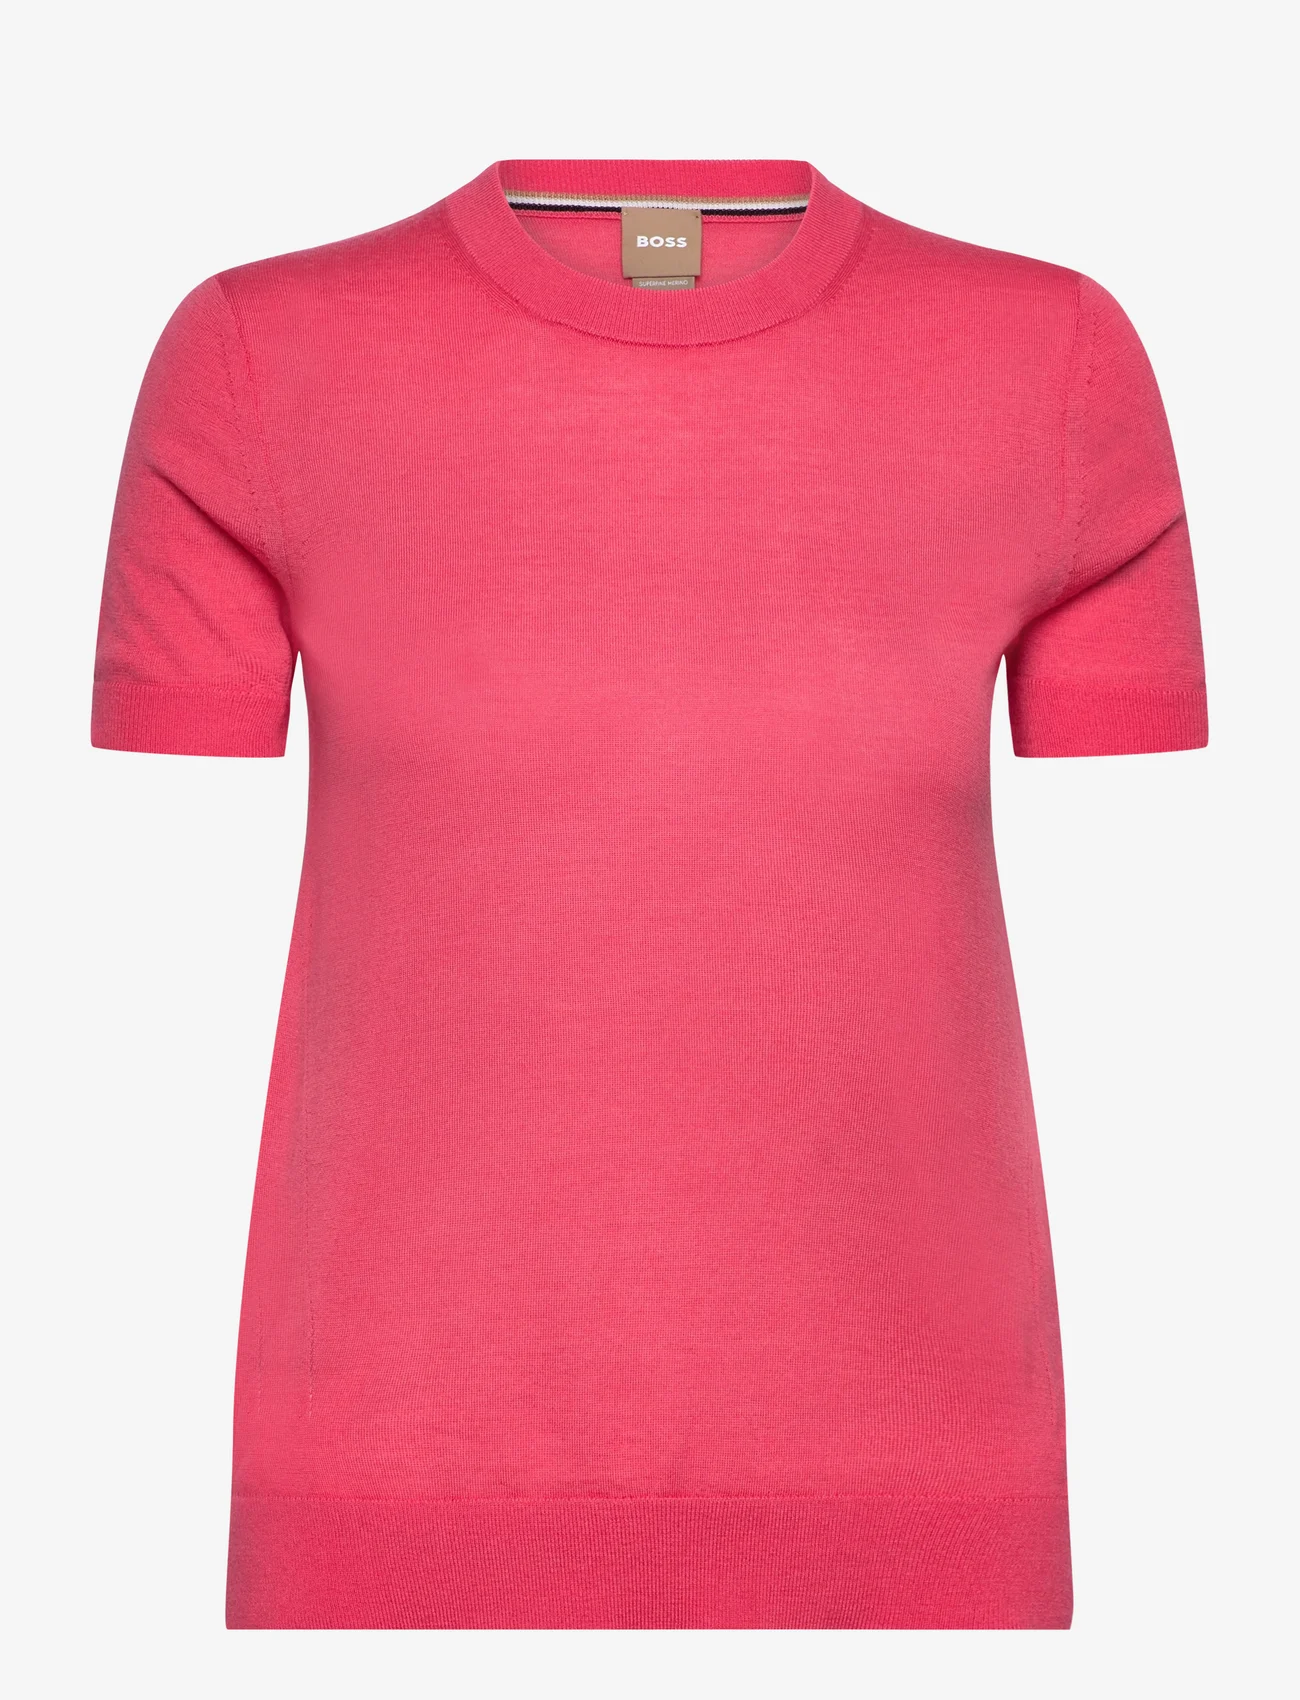 BOSS - Falyssiasi - pullover - bright pink - 0